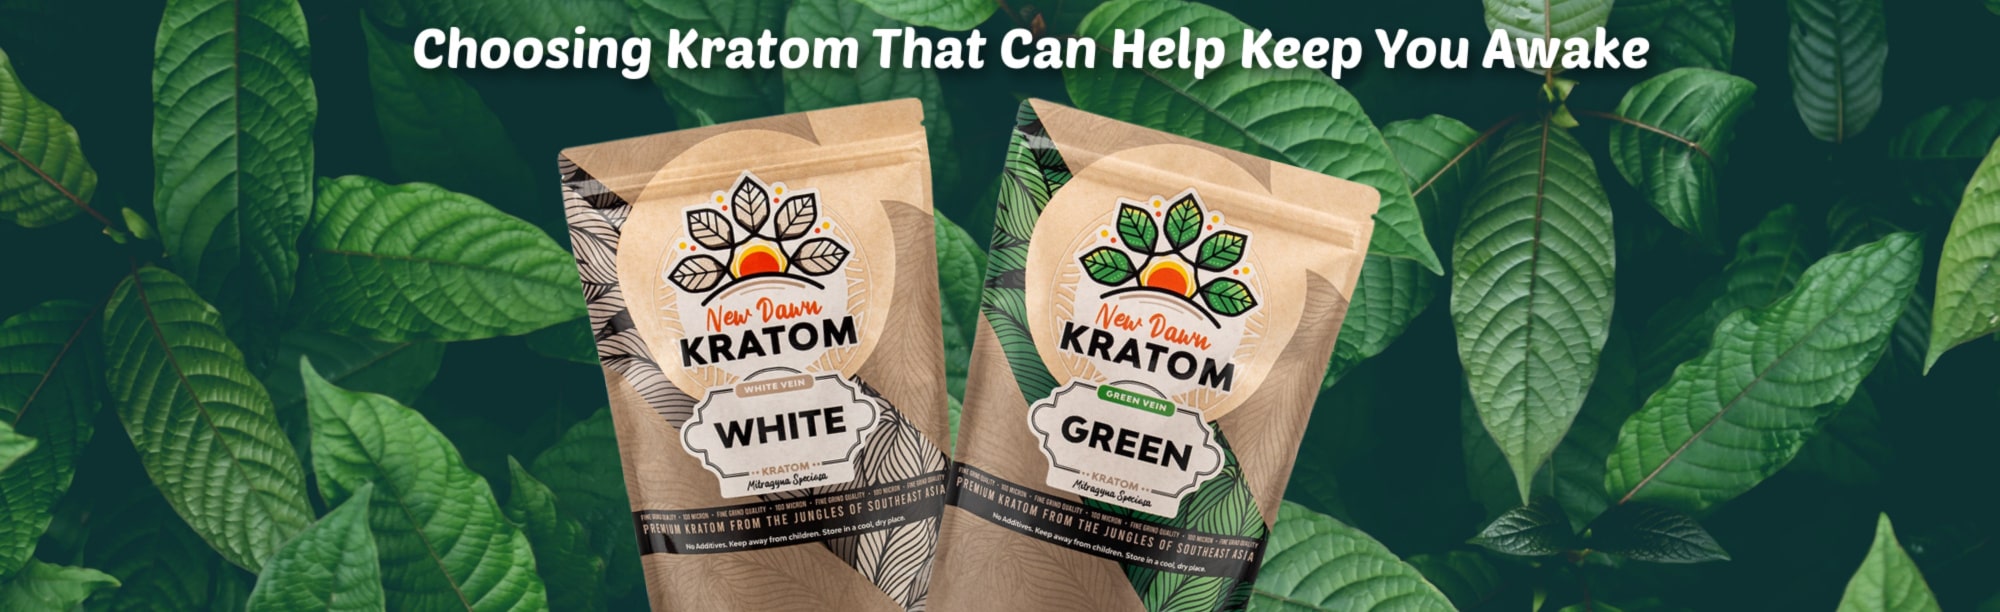 image of choosing kratom that can keep you awake